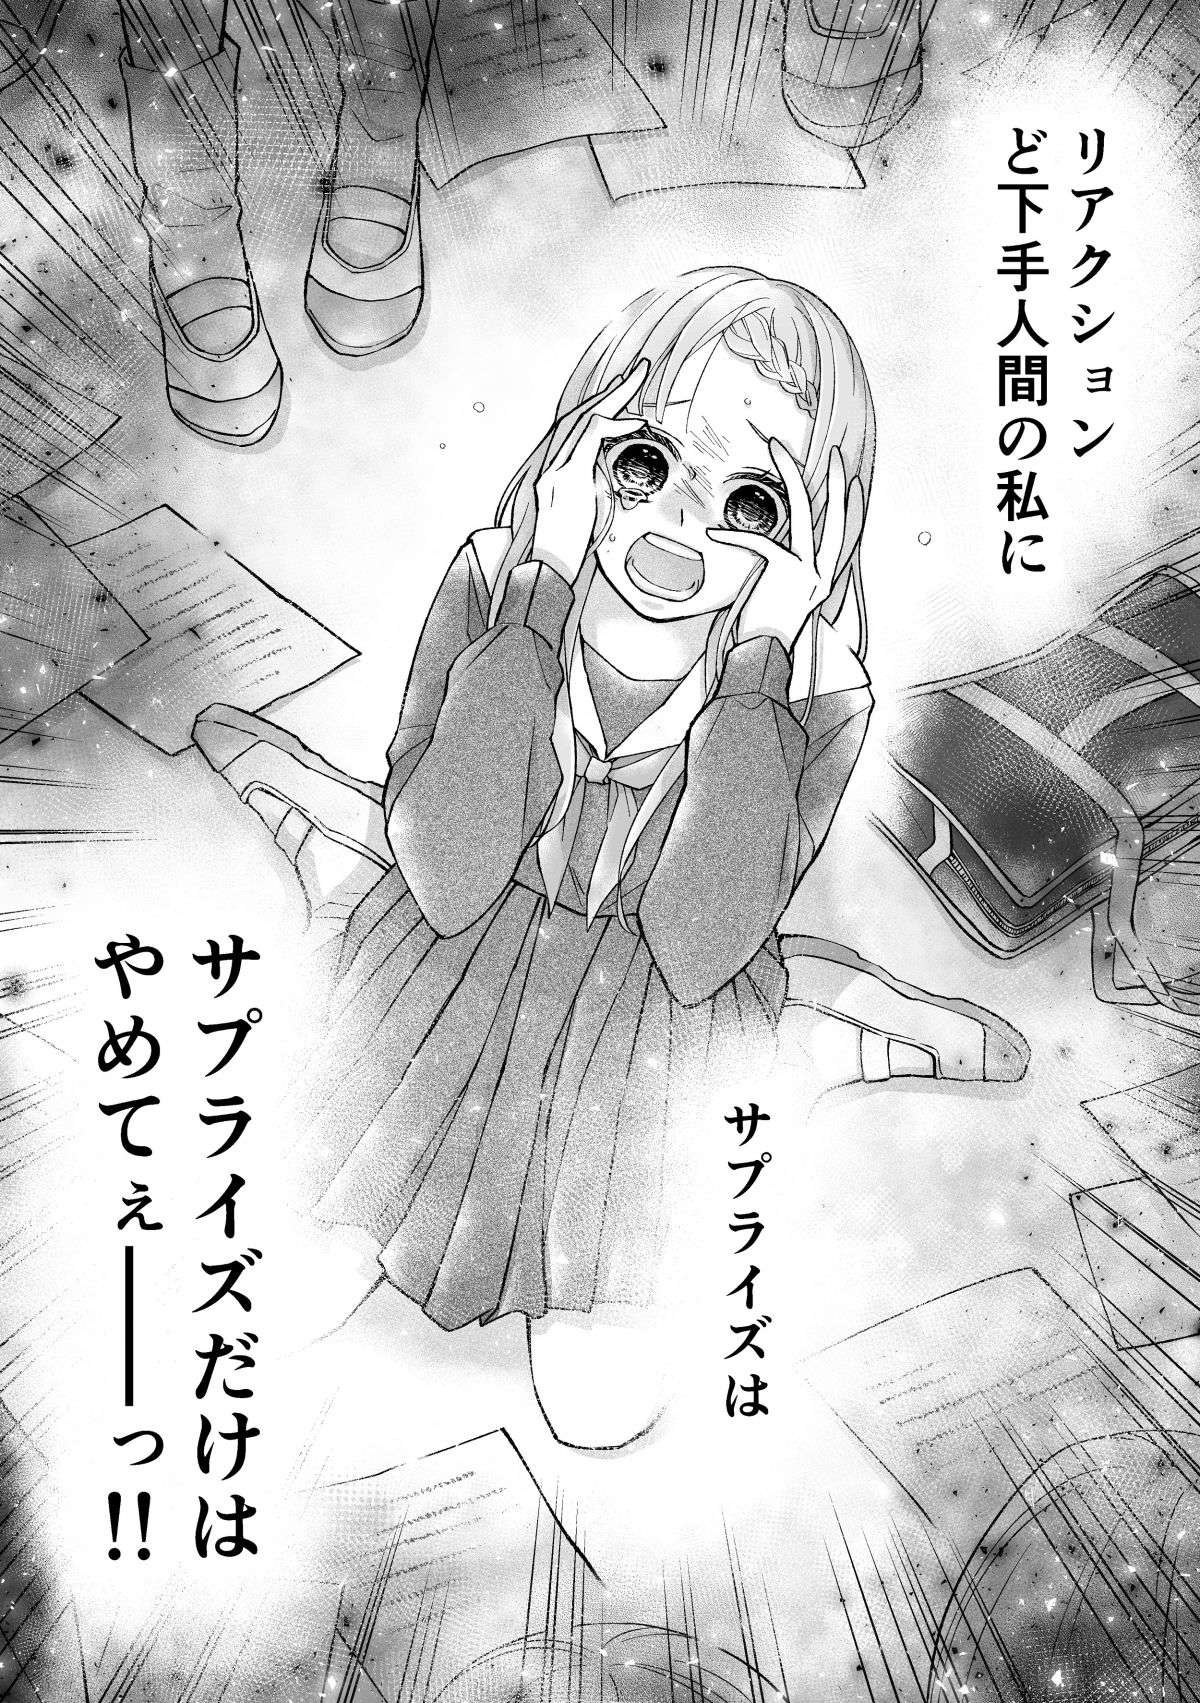 『少女漫画ぽく愚痴る。』 36.jpg